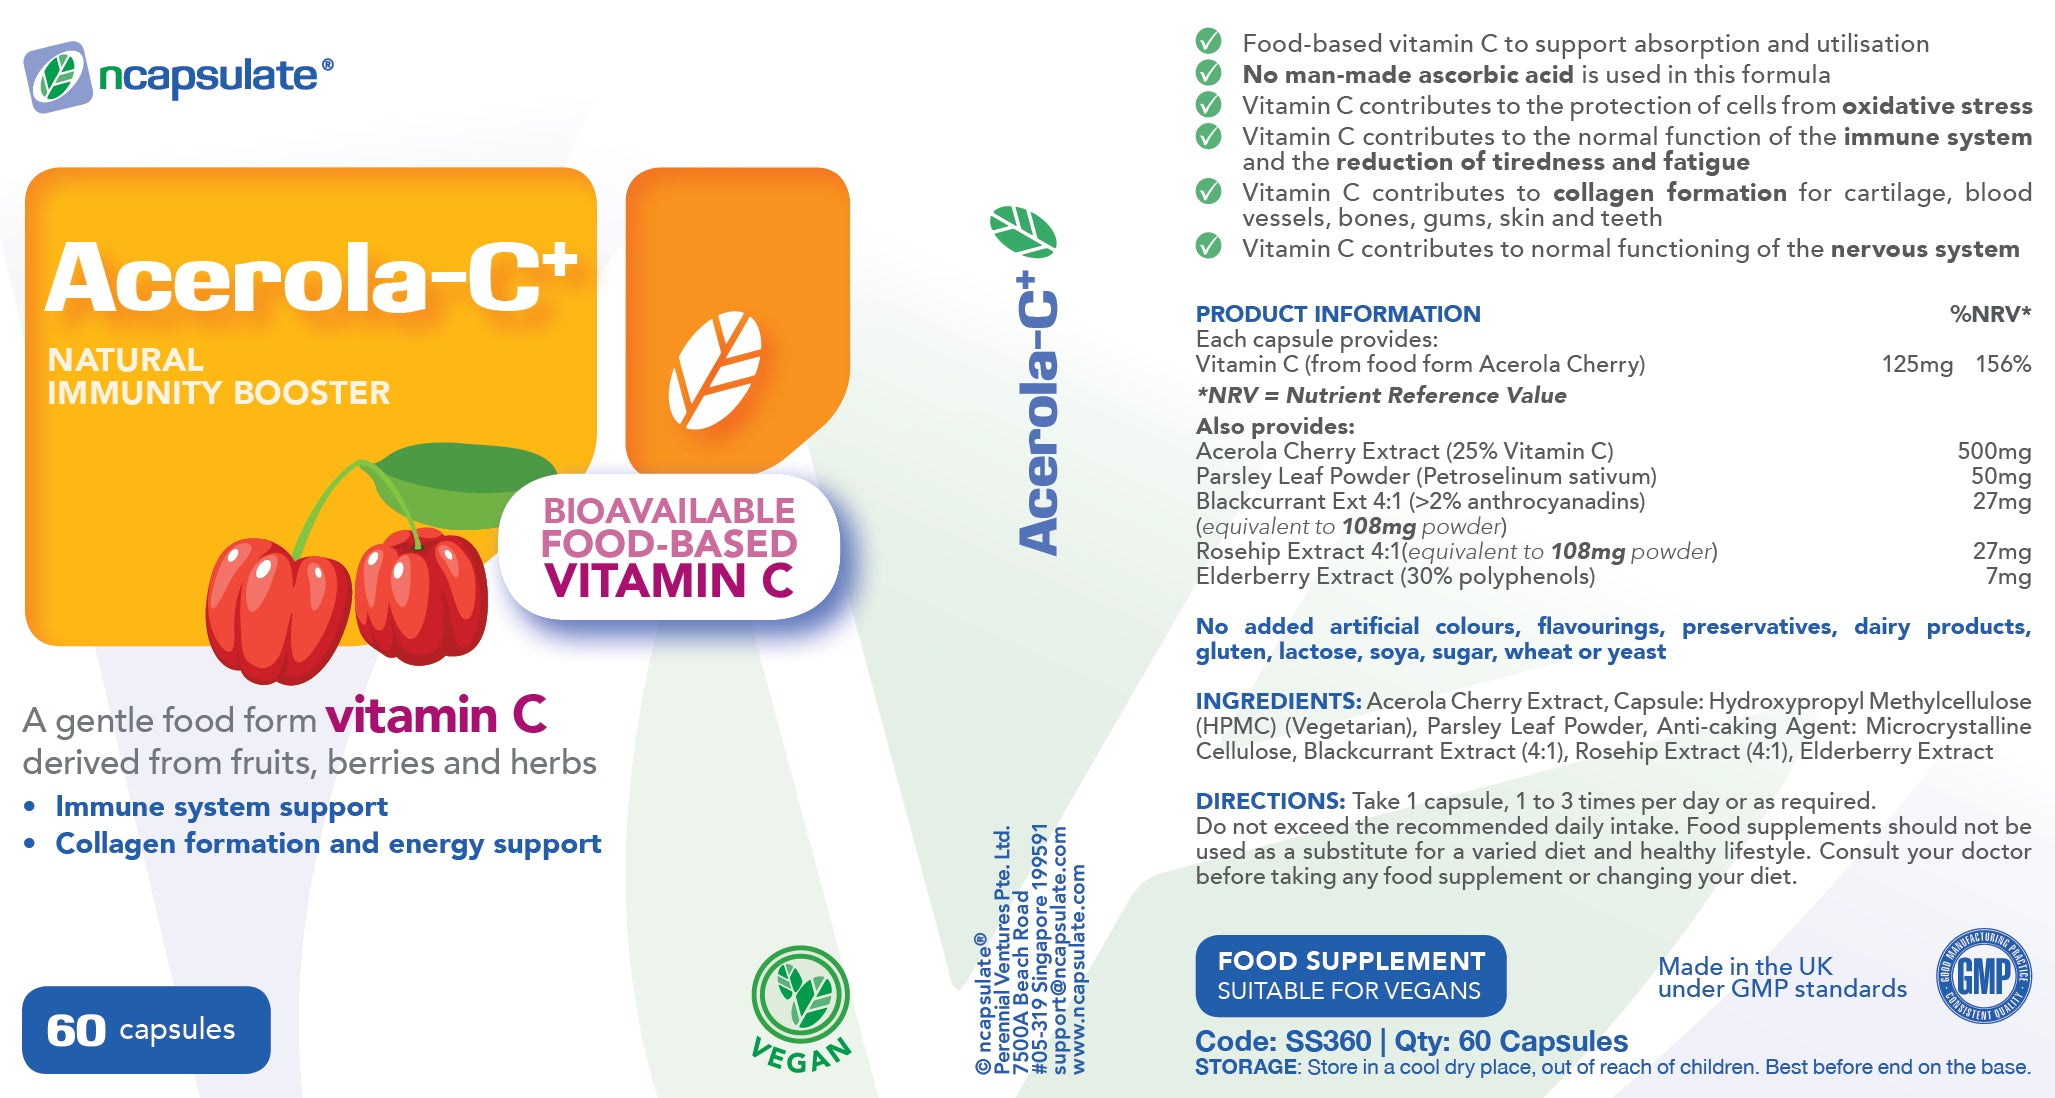 ncapsulate® ACEROLA-C+ Premium Health Supplement Product Label